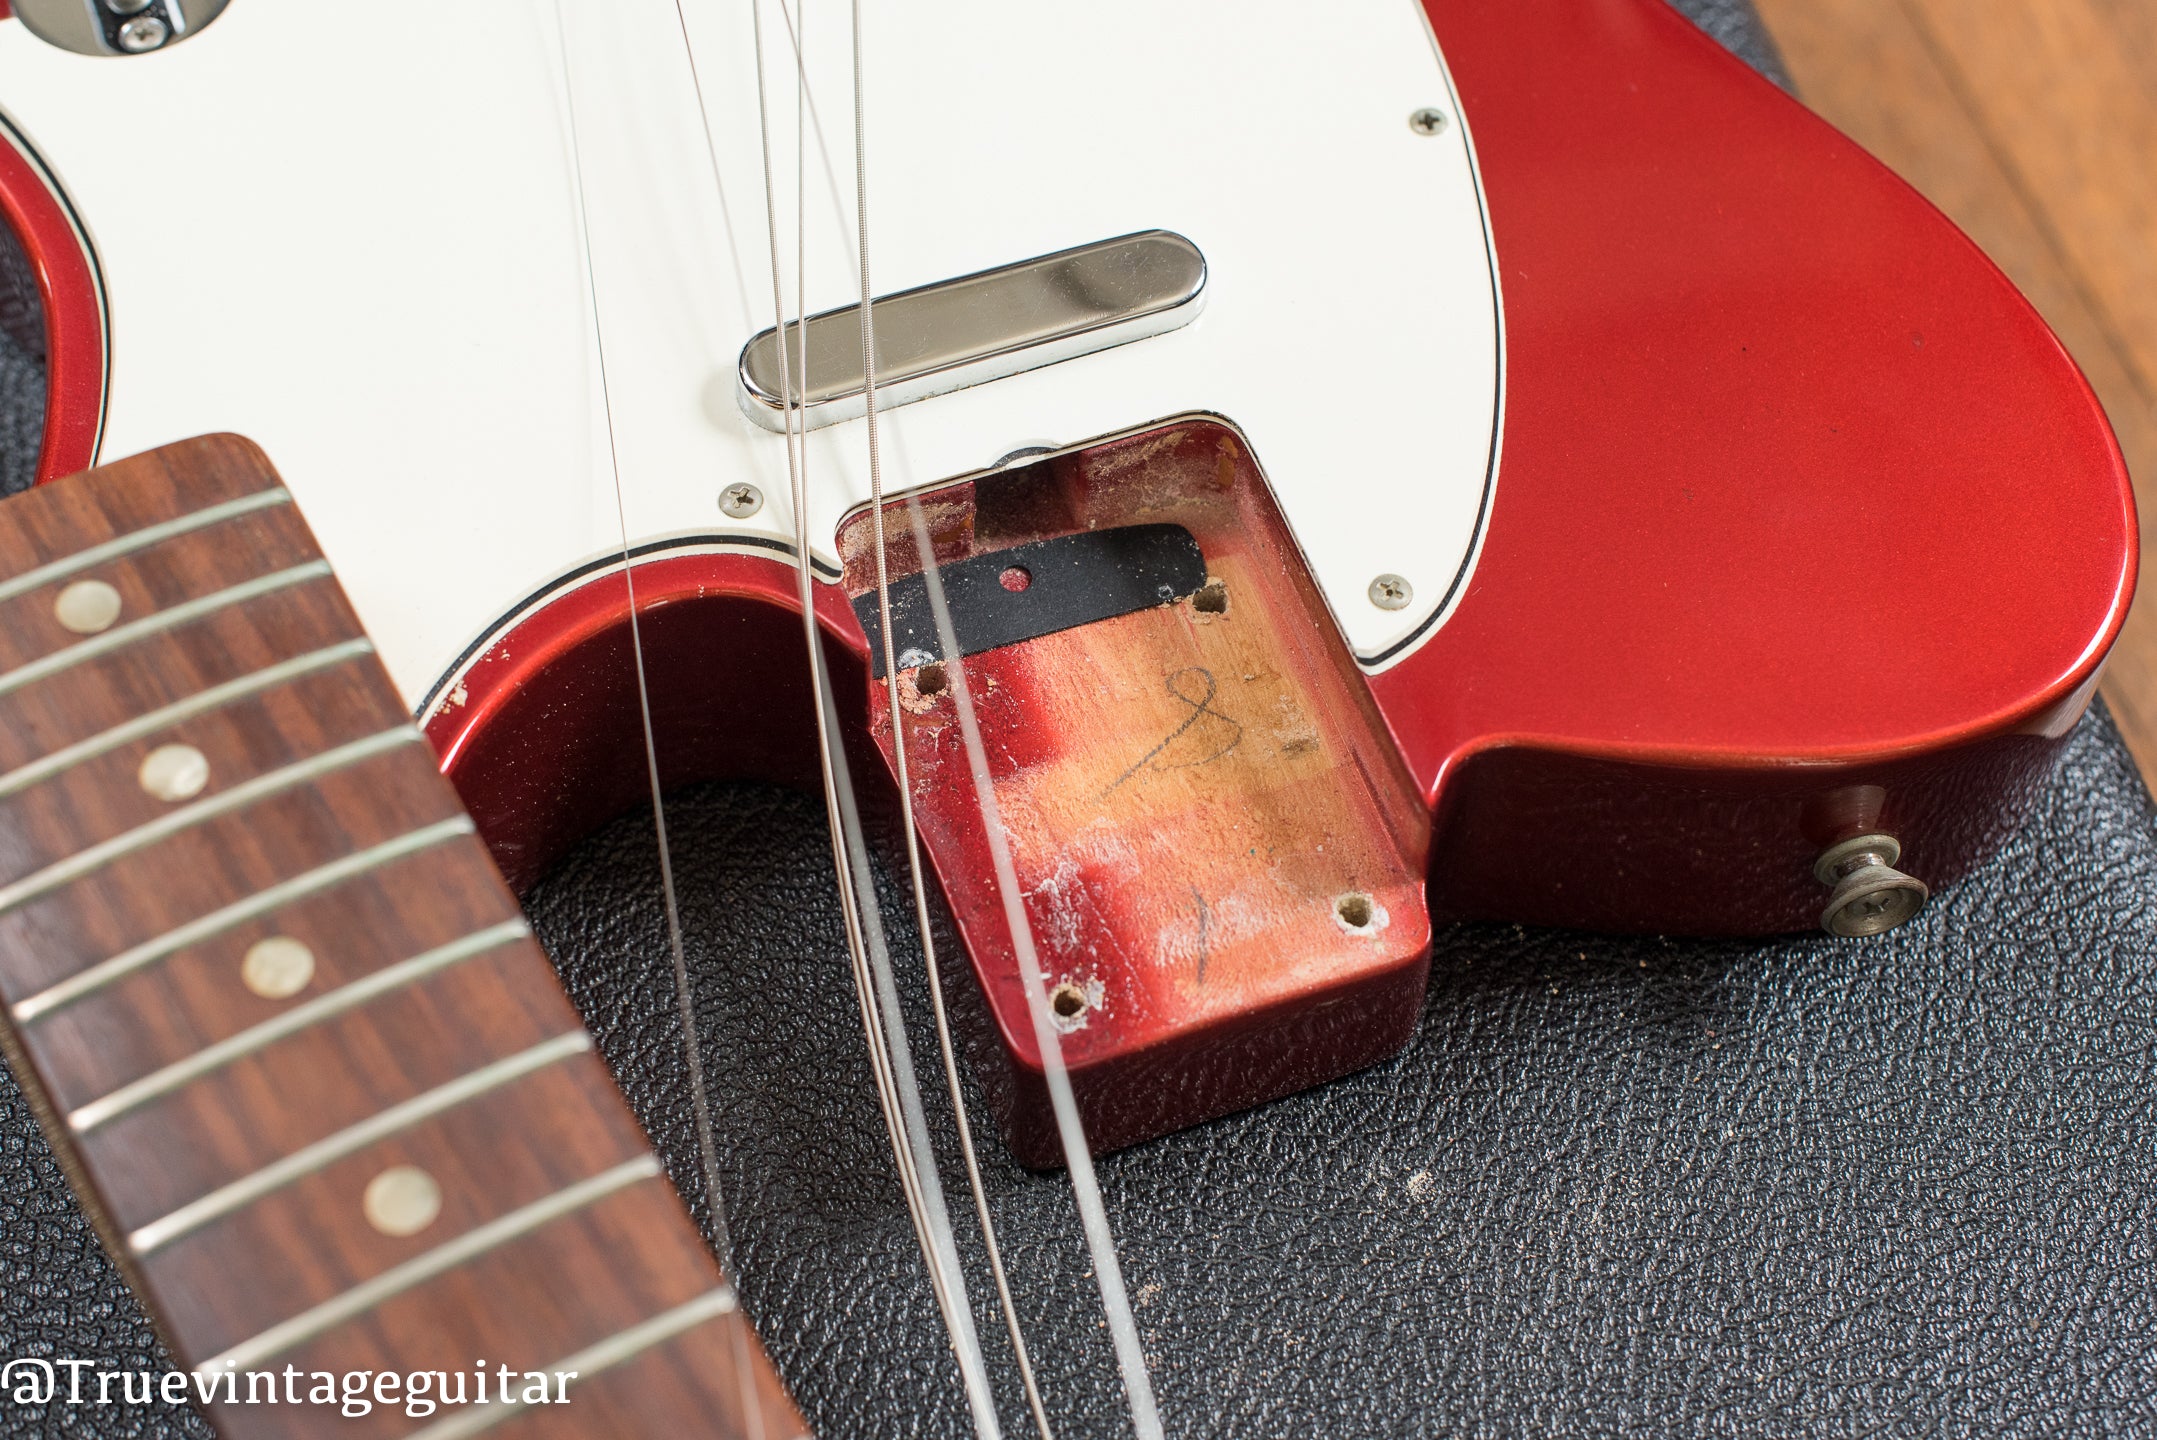 1968 Fender Telecaster neck pocket candy apple red